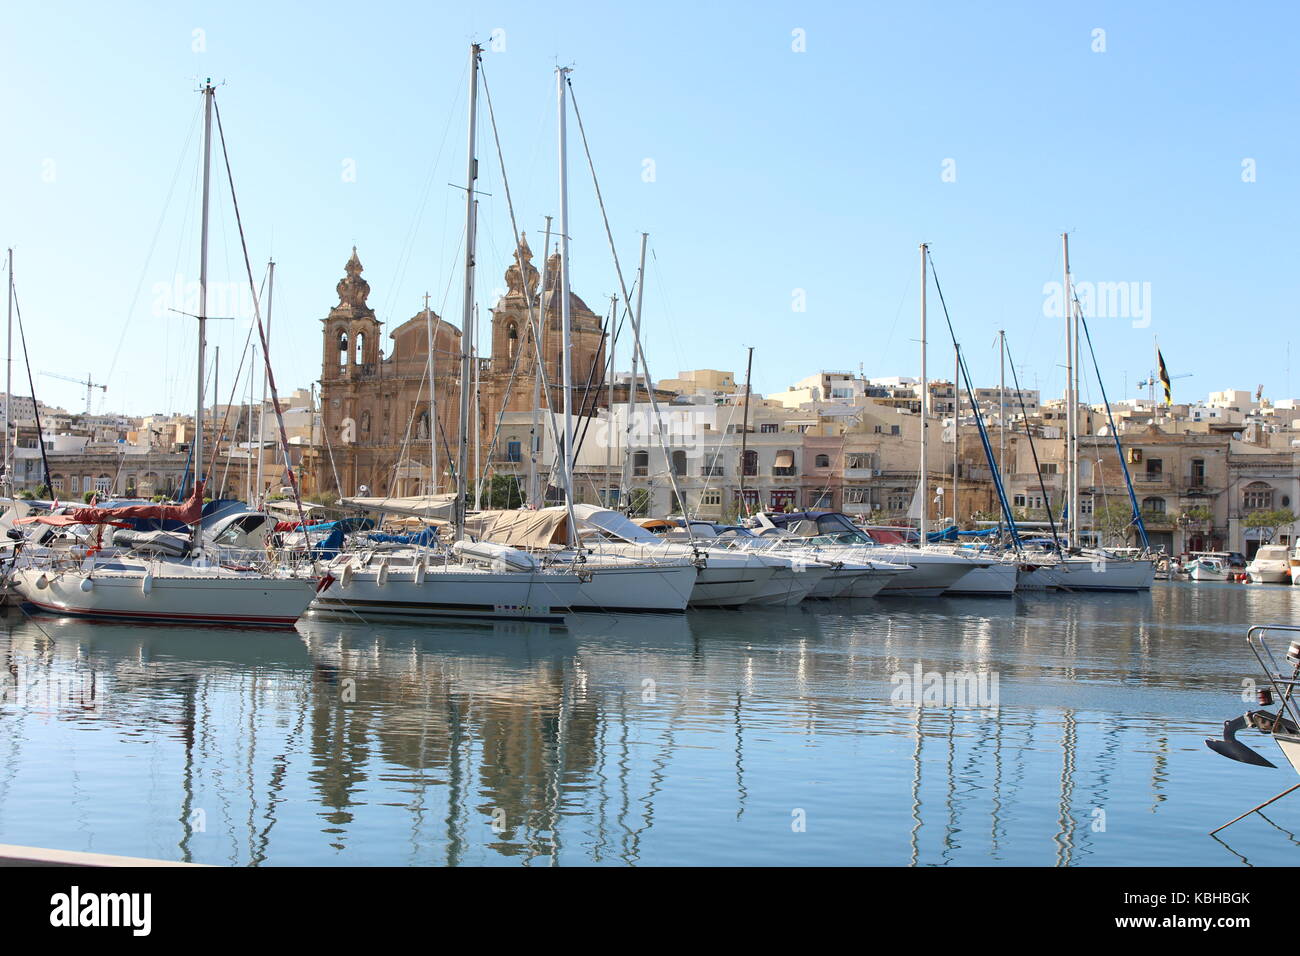 Boote in einem maltesischen Hafen mit einer Kirche im Hintergrund, und starke Reflexionen im Wasser an einem sonnigen Tag, Malta, September 2017 Stockfoto